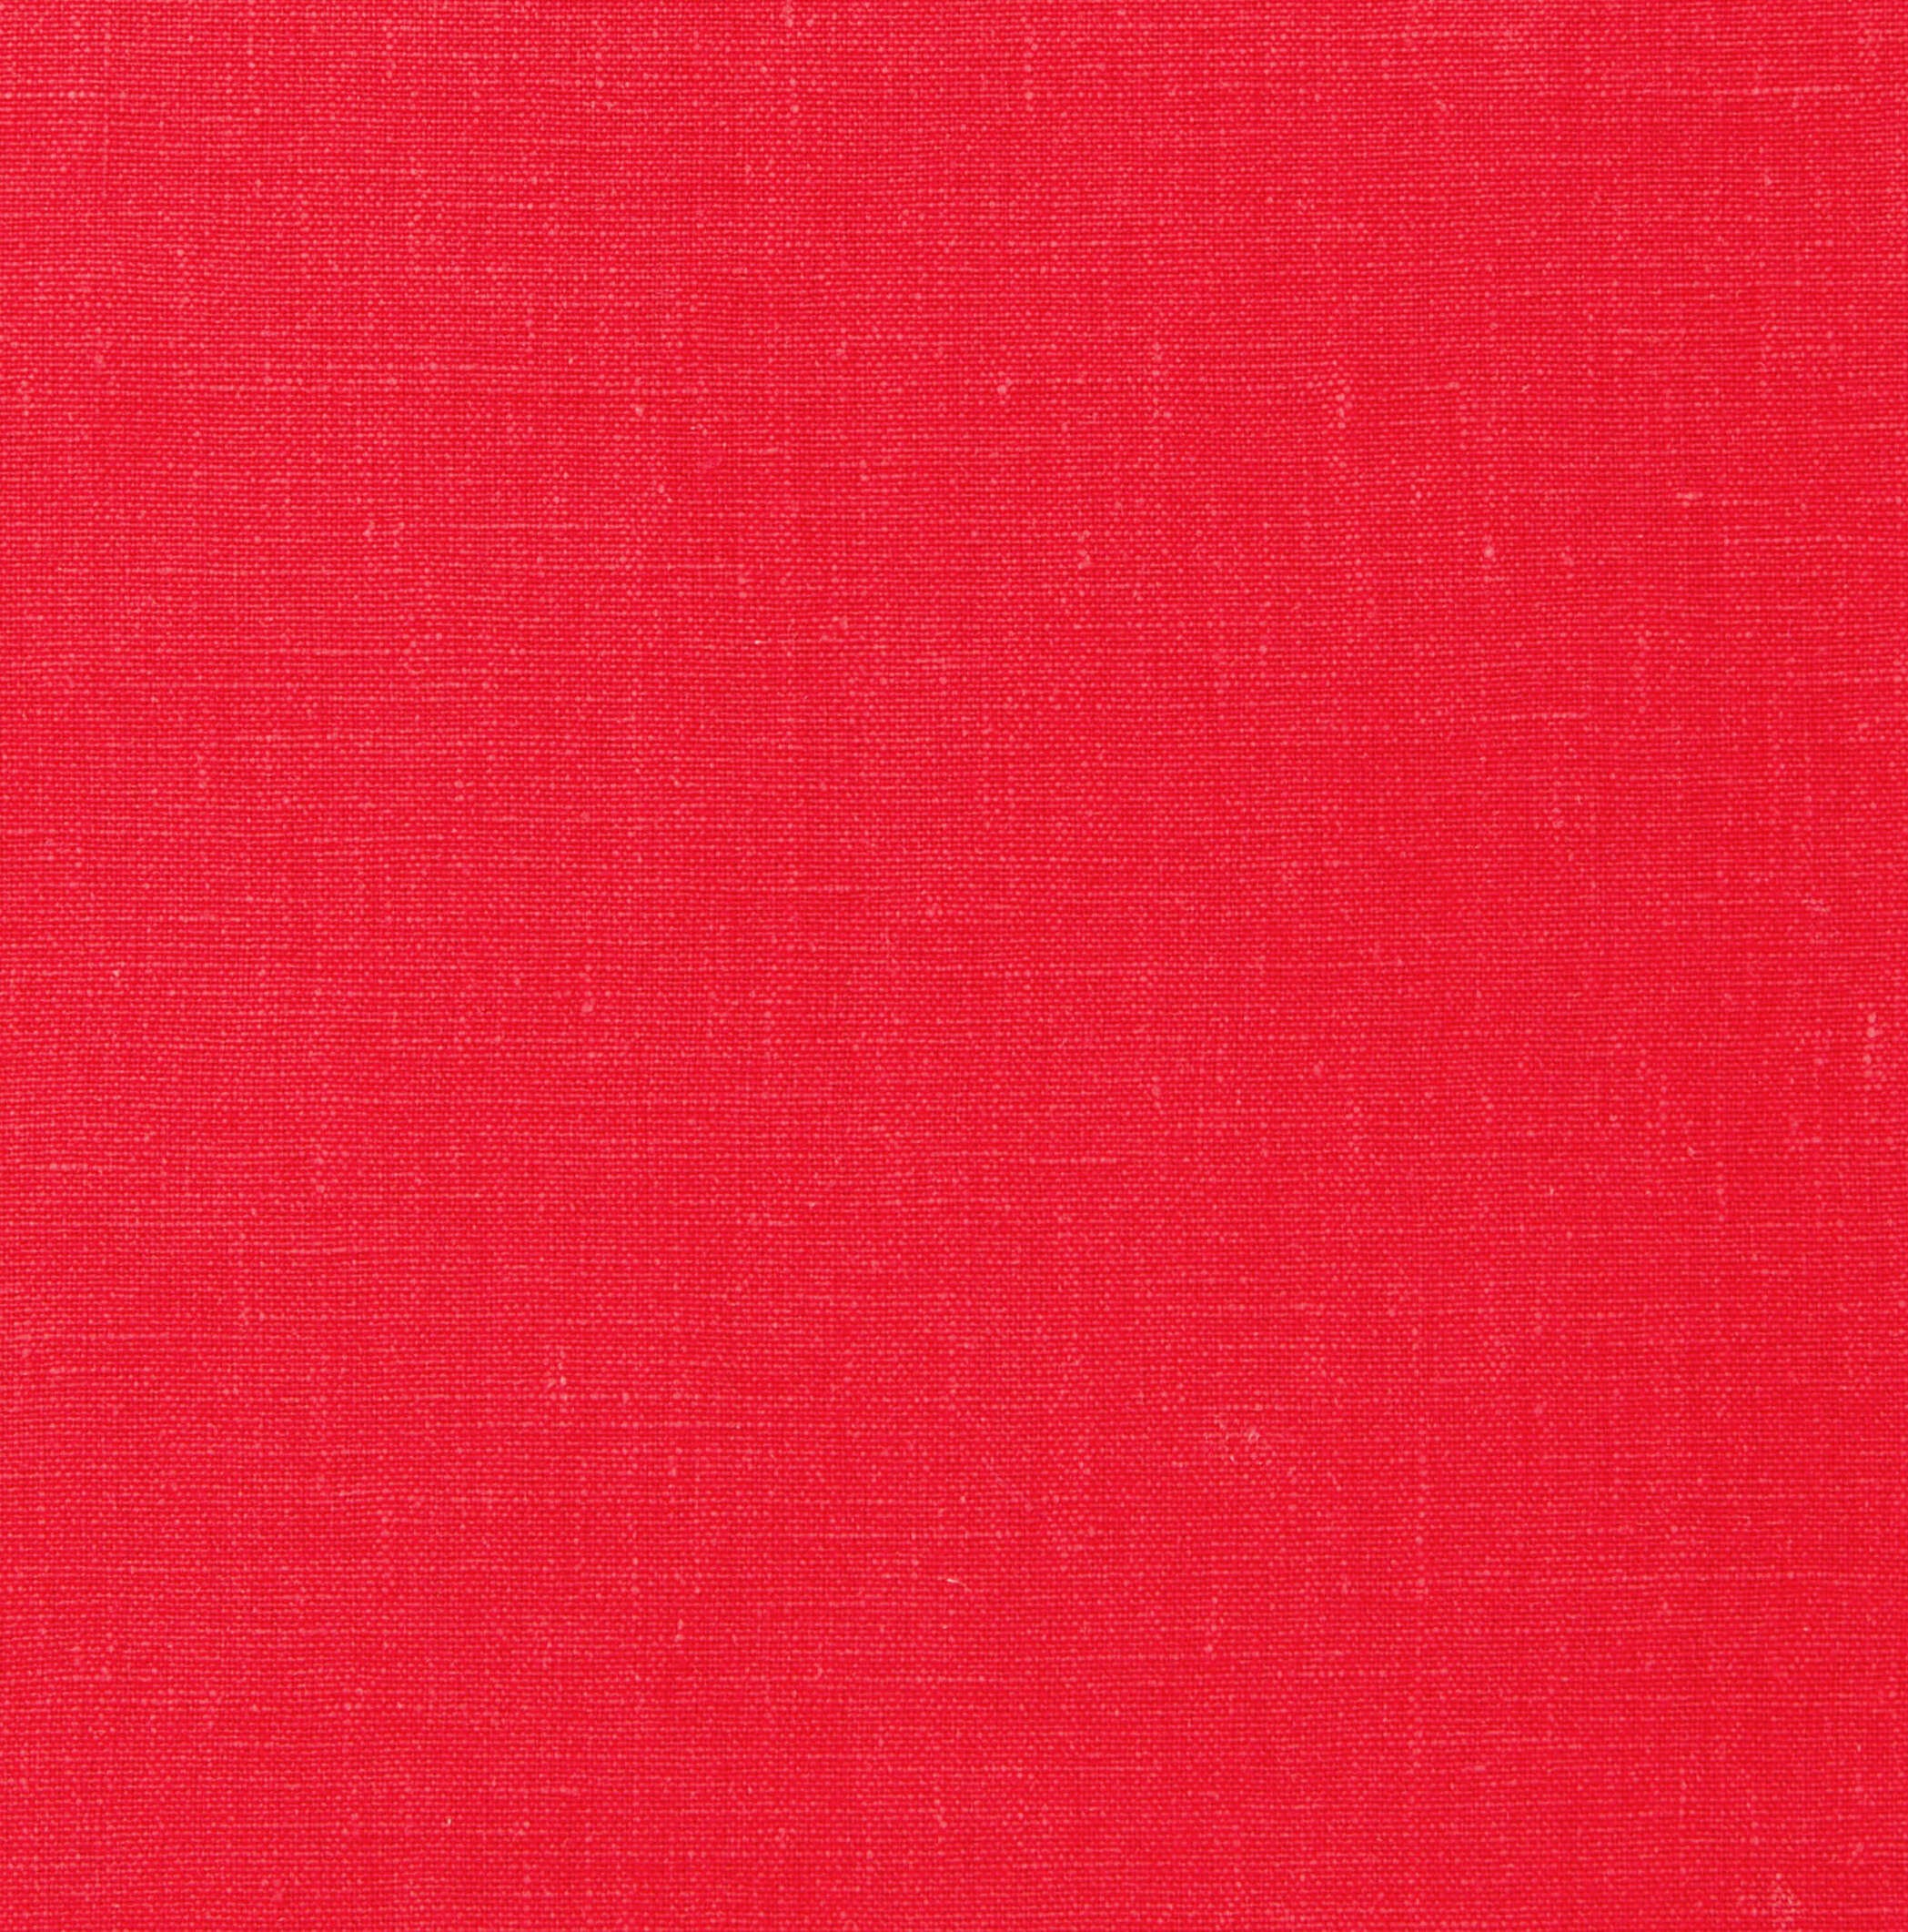 Pré-visualização da personalização do produto Mission Pautado Linho Vermelho | Lined Mission Notebook - Red Linen.